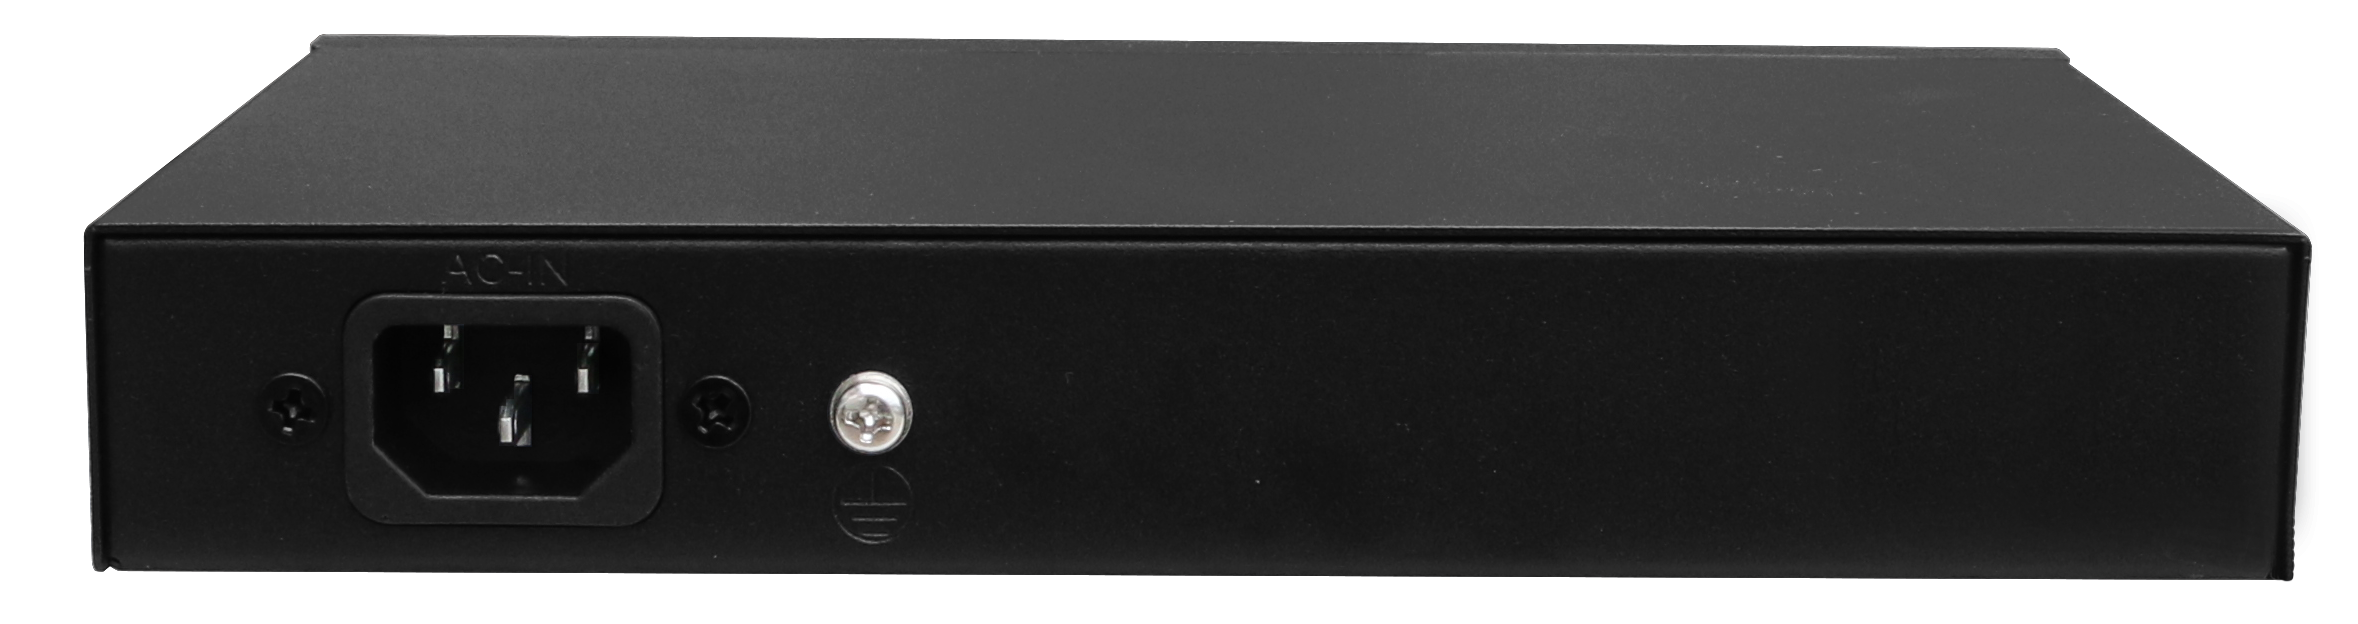 WI-PS308G | 10 Port GbE PoE Switch - 120W